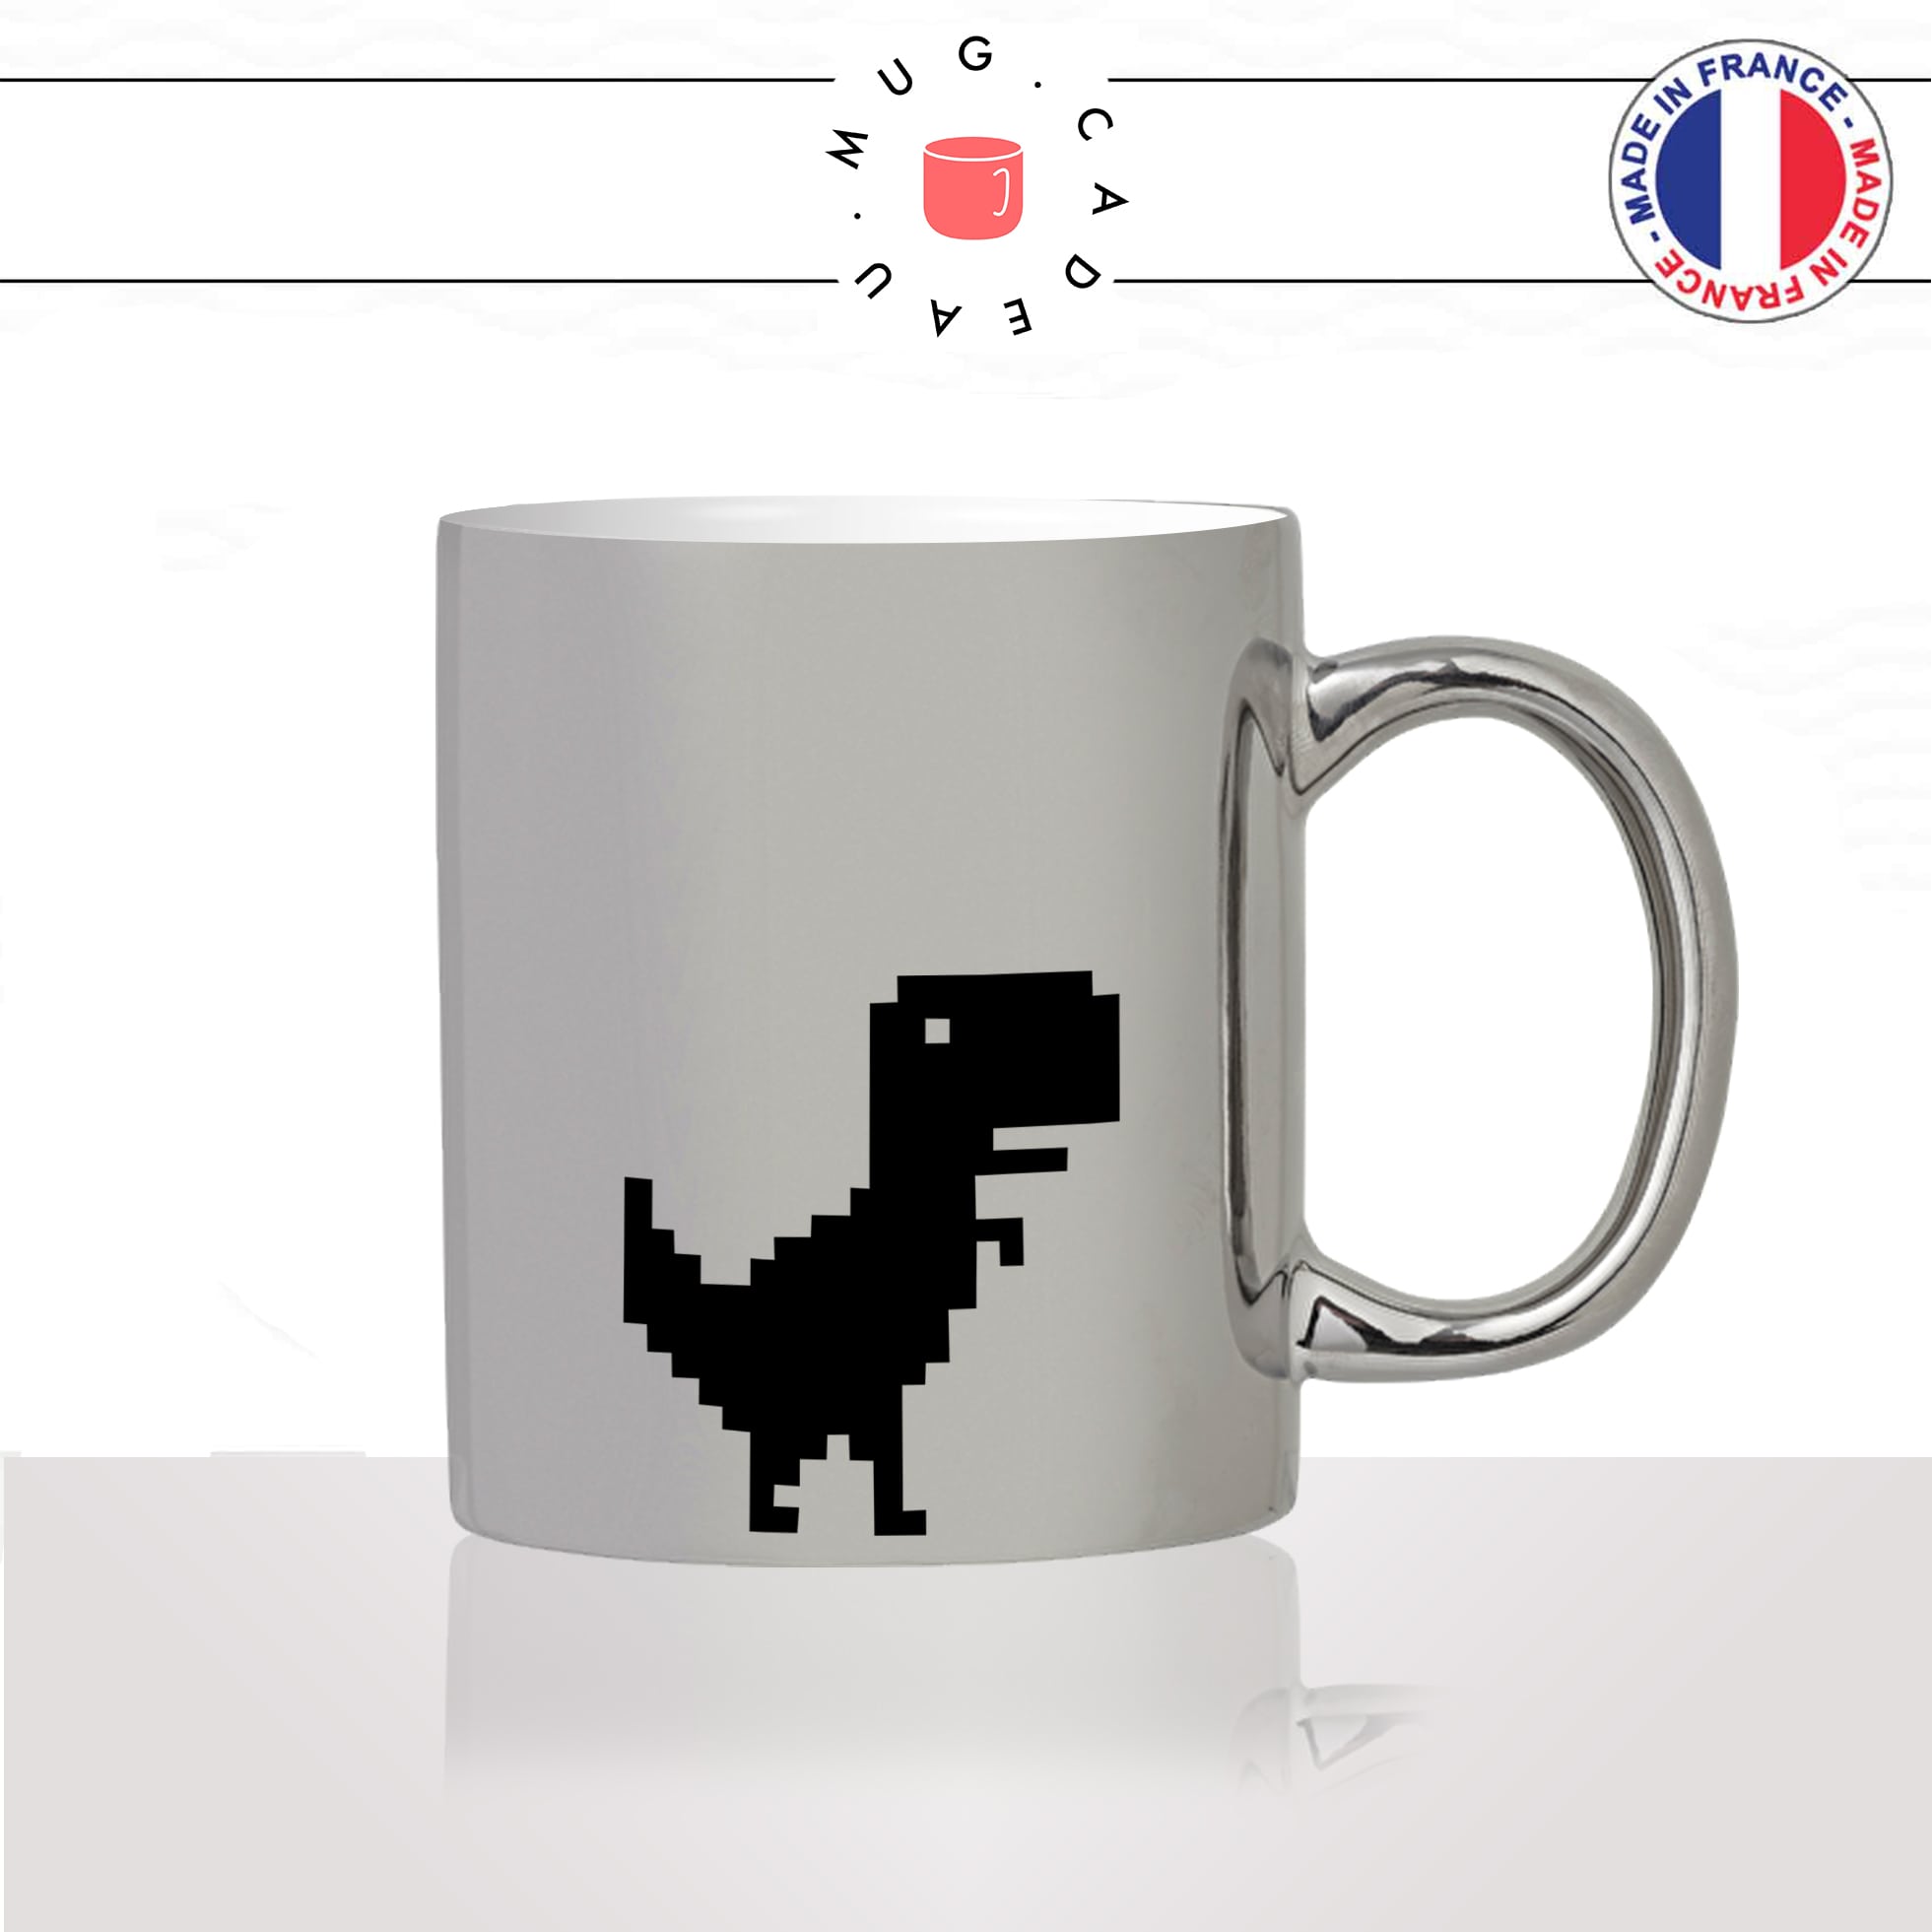 mug-tasse-silver-argenté-dinosaure-t-rex-geek-no-internet-error-drole-mignon-animal-noir-fun-café-thé-idée-cadeau-original-personnalisé2-min